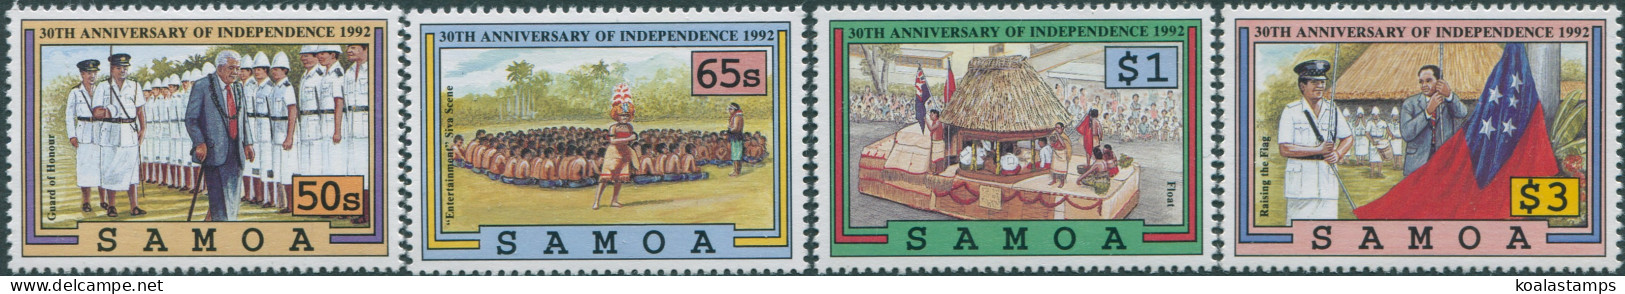 Samoa 1992 SG872-875 30th Anniversary Set MNH - Samoa (Staat)